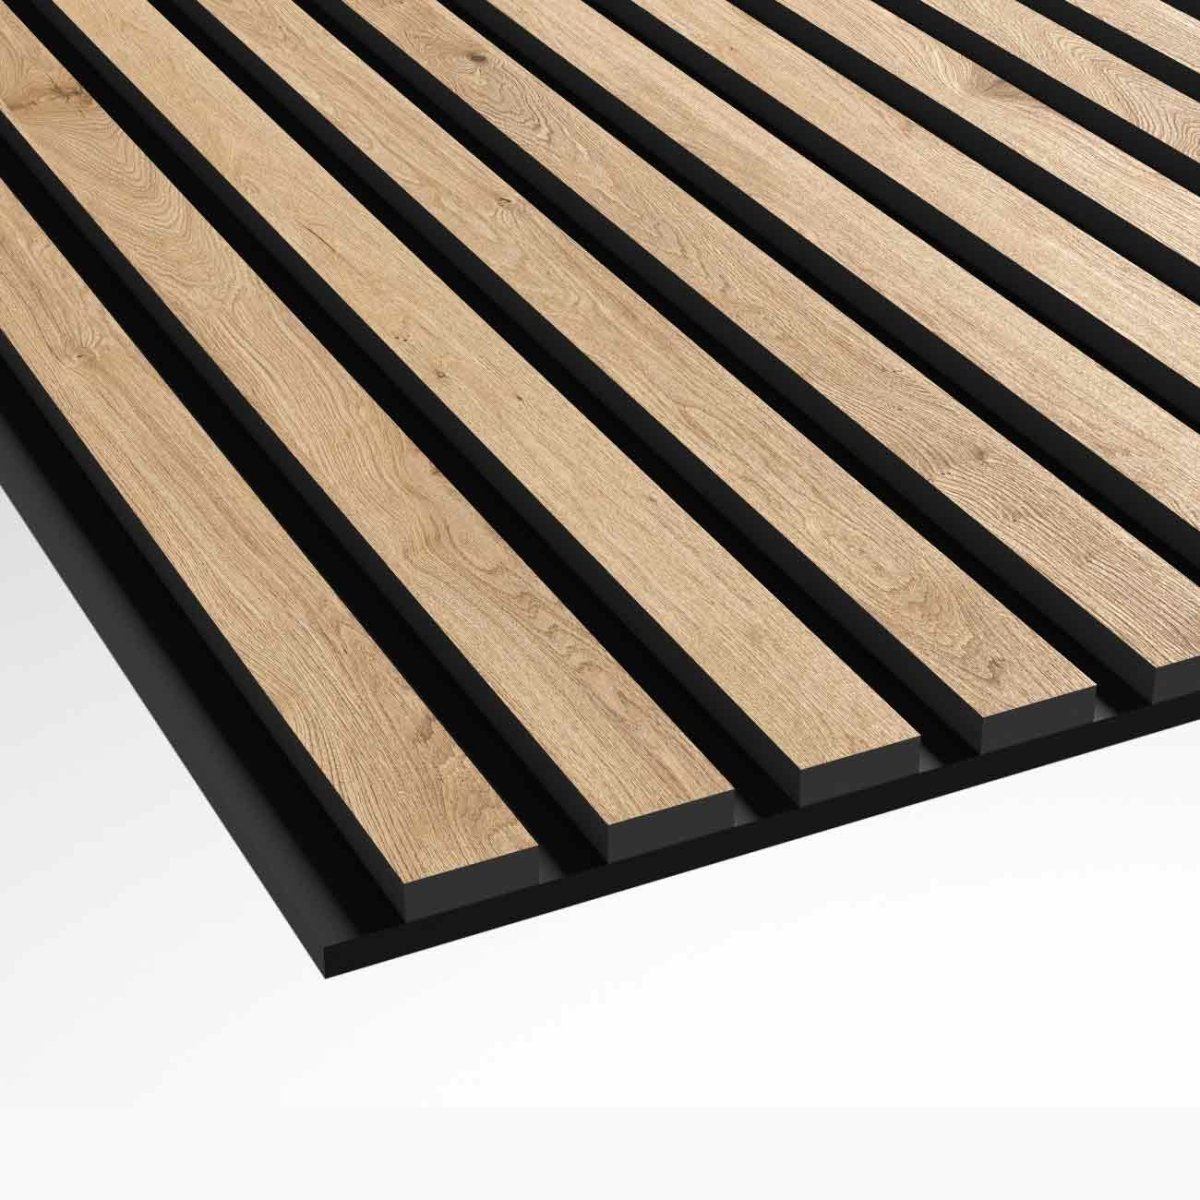 Wood Panels, Classic wood slat acoustic panels